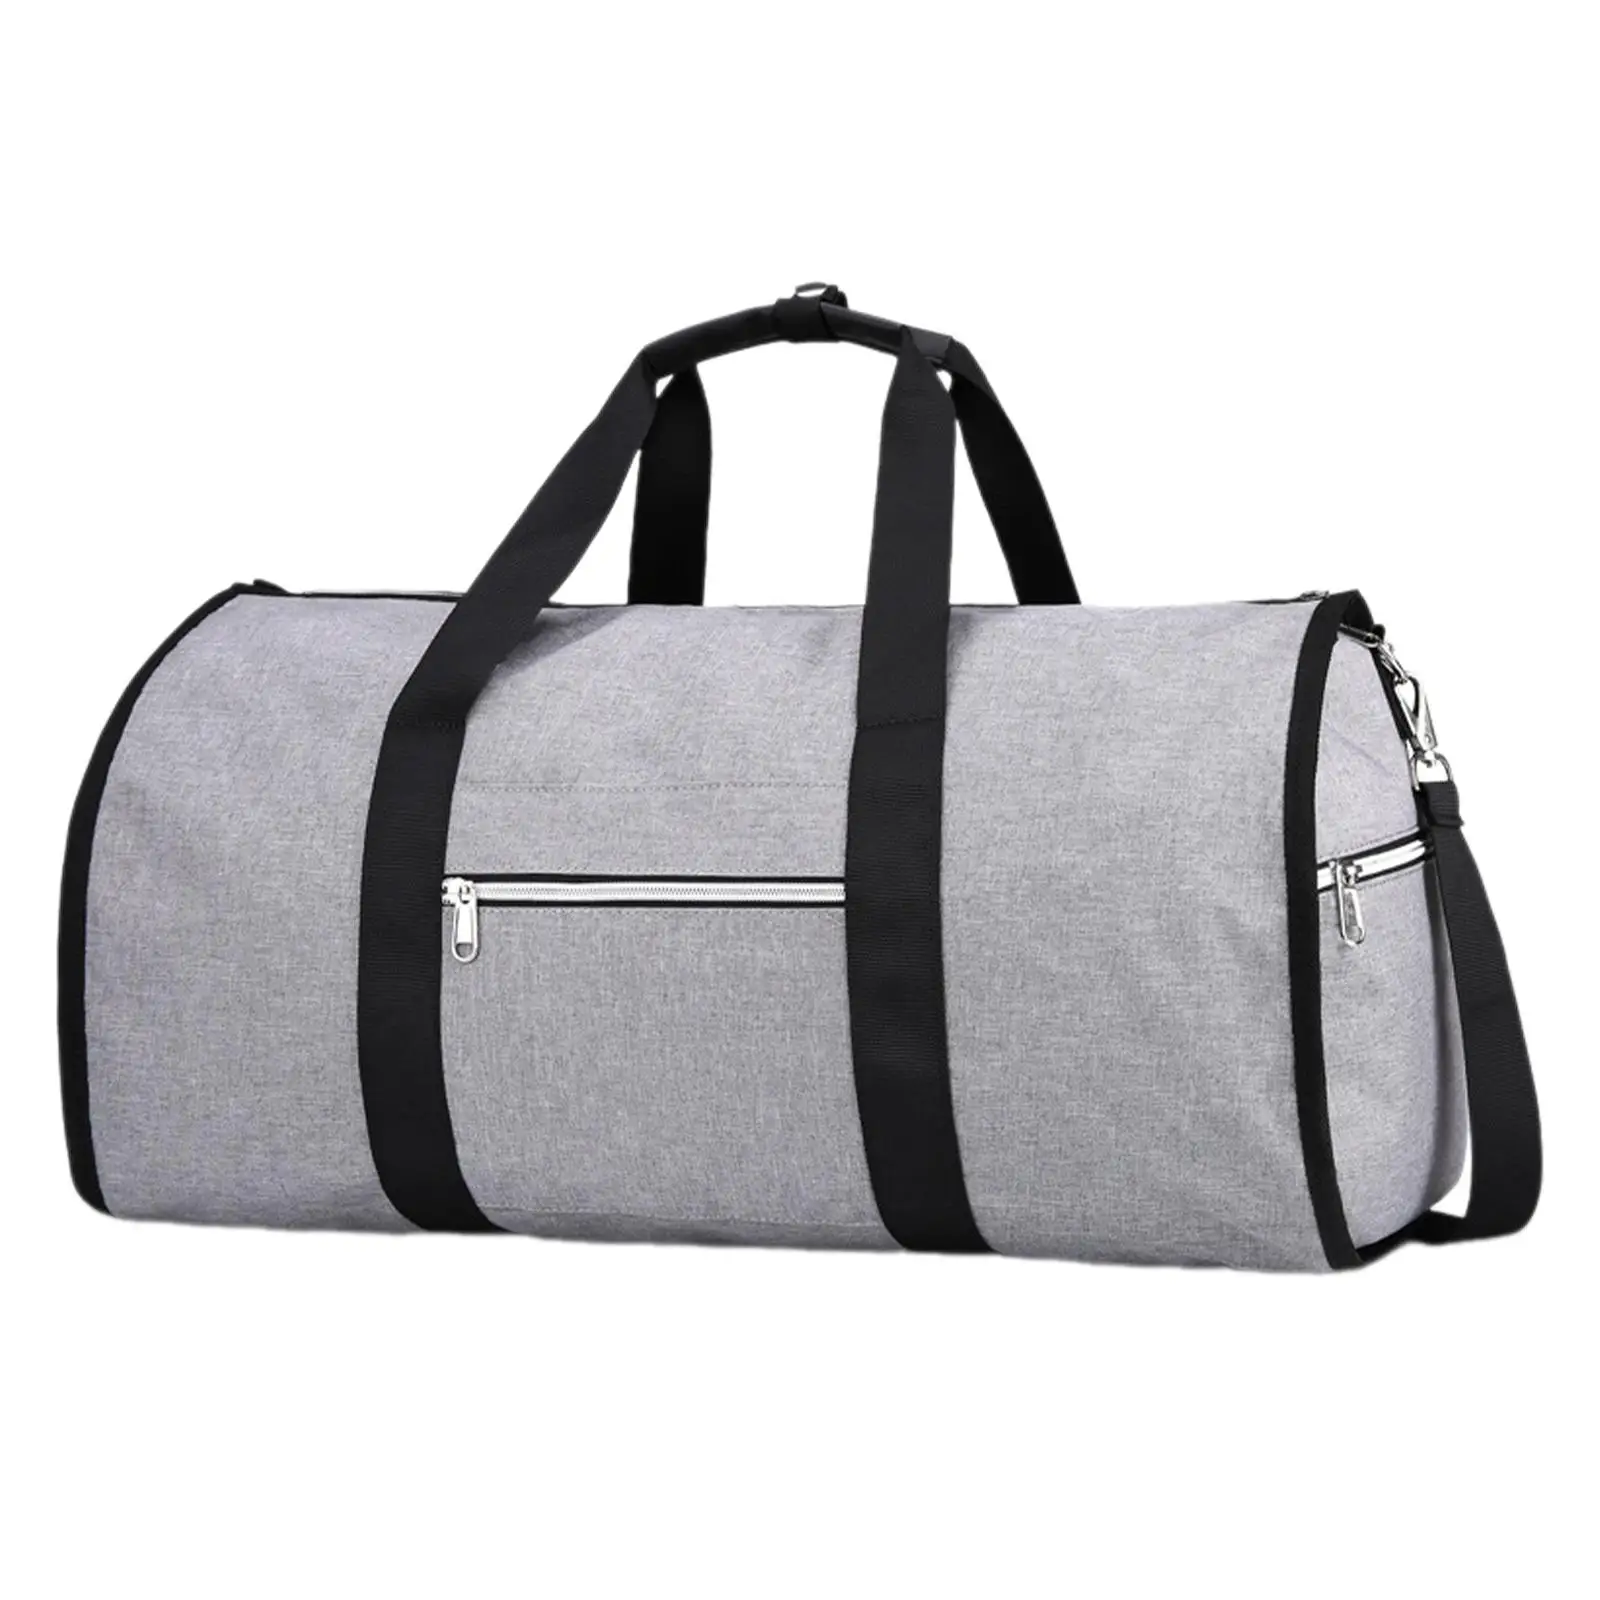 Garment Duffel Bag Shoulder Handbag Adjustable Shoulder Strap Men Travel Duffel Bag for Hiking Camping Holiday Outdoor Business